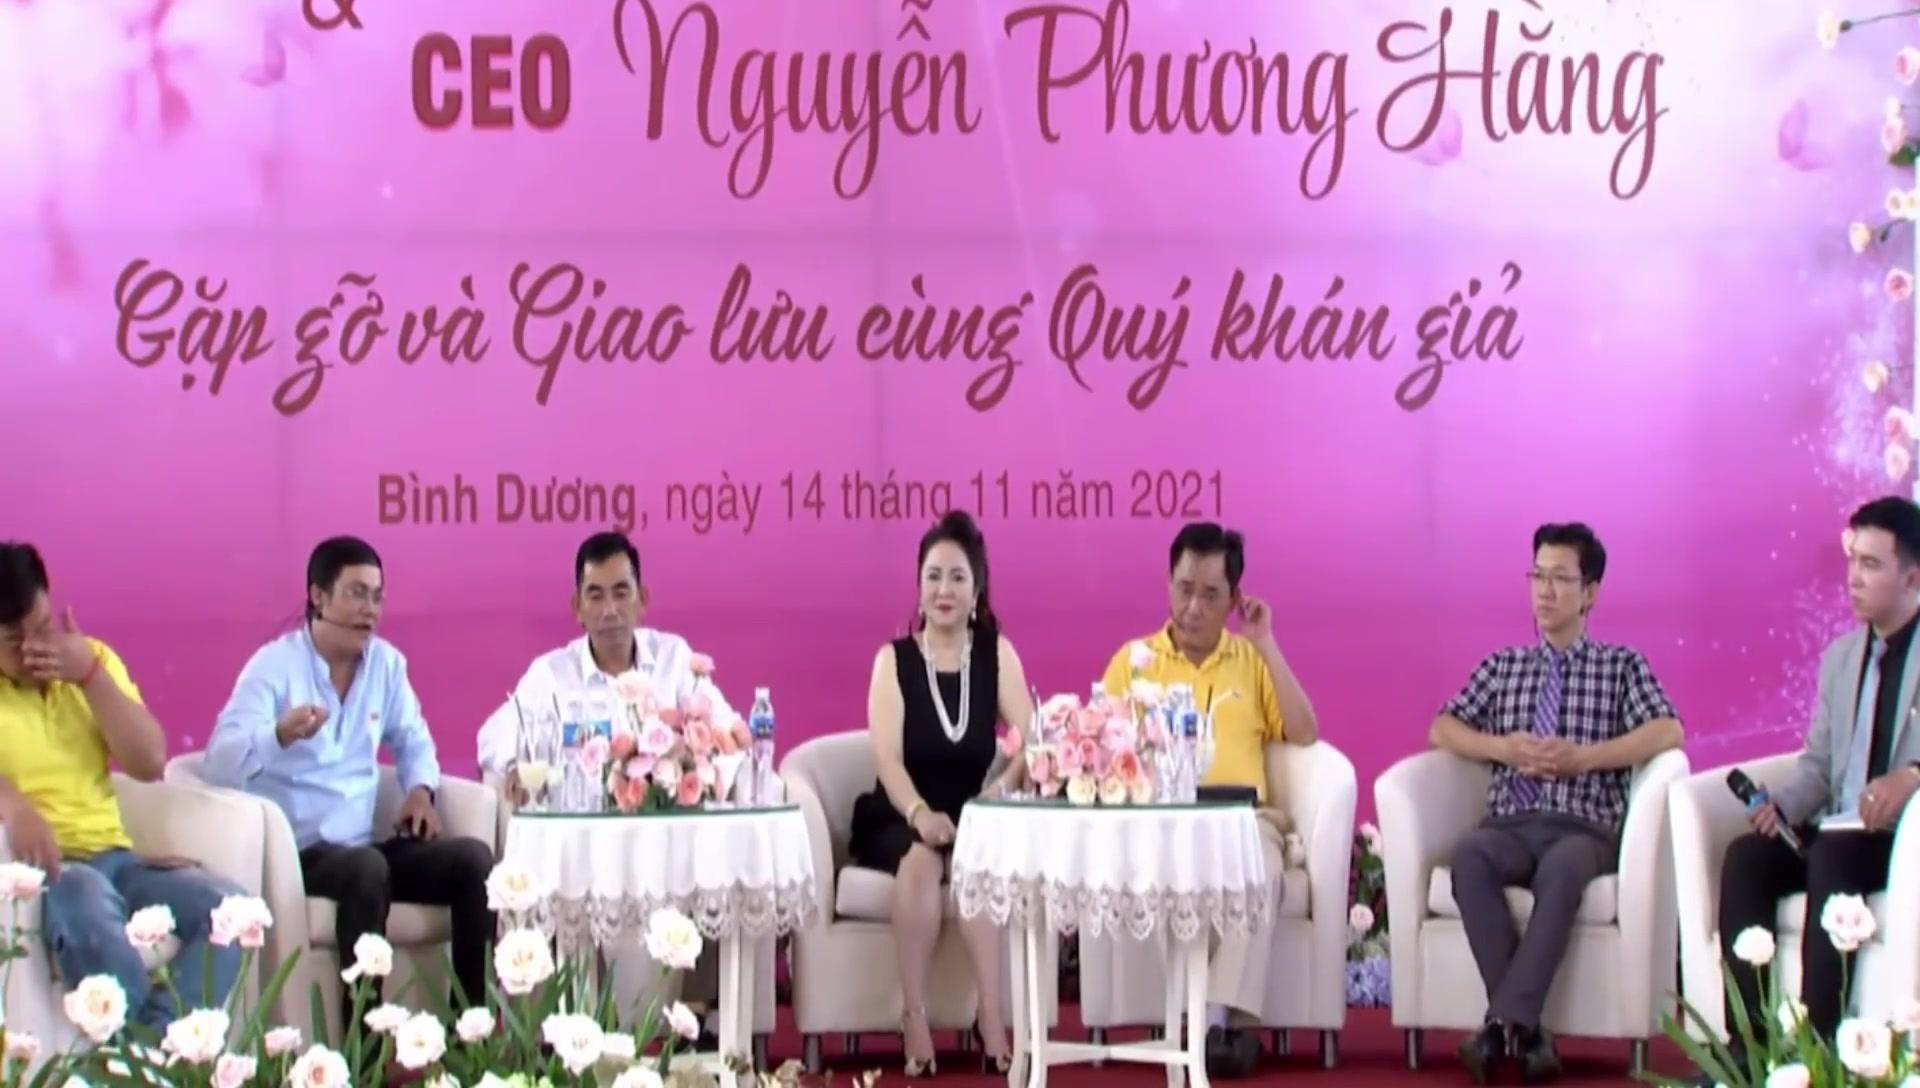 Diễn biến mới về vụ việc bà Nguyễn Phương Hằng livestream gần 1000 người tham dự gây xôn xao  - Ảnh 2.